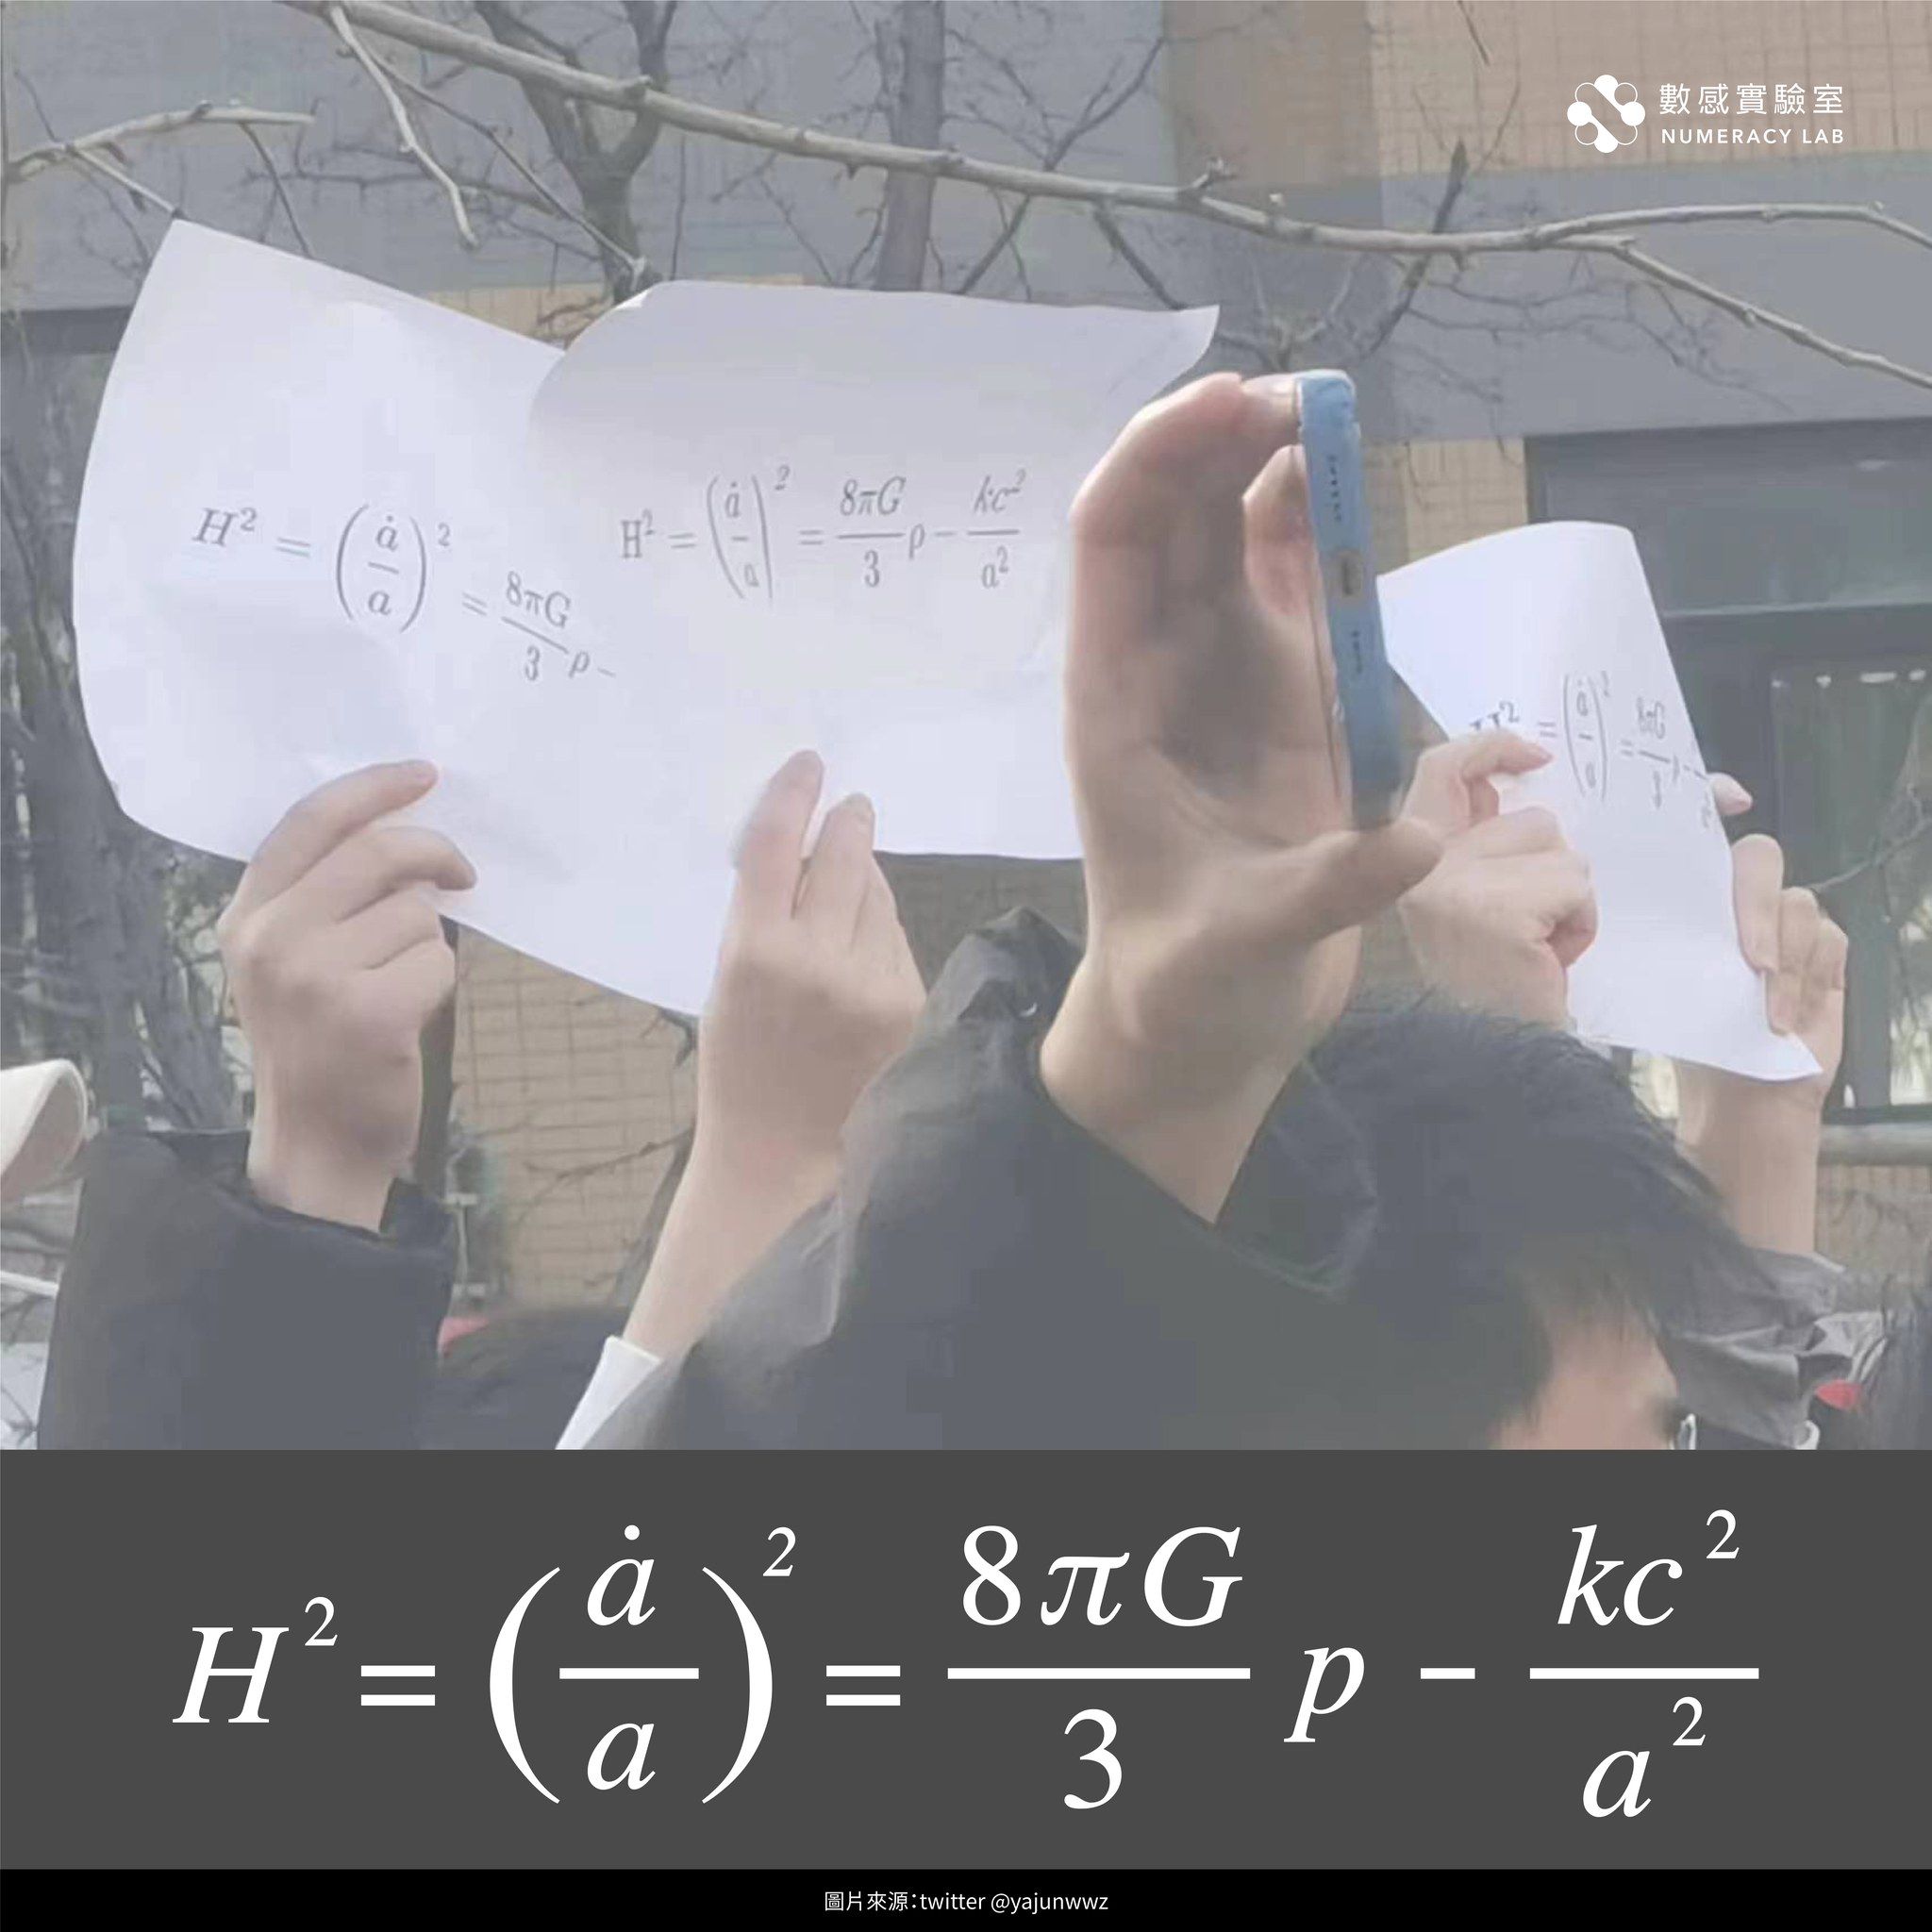 北京清華大學學生在白紙革命中舉著一張上頭列著「弗里德曼方程式」的A4紙。數感實驗室提供